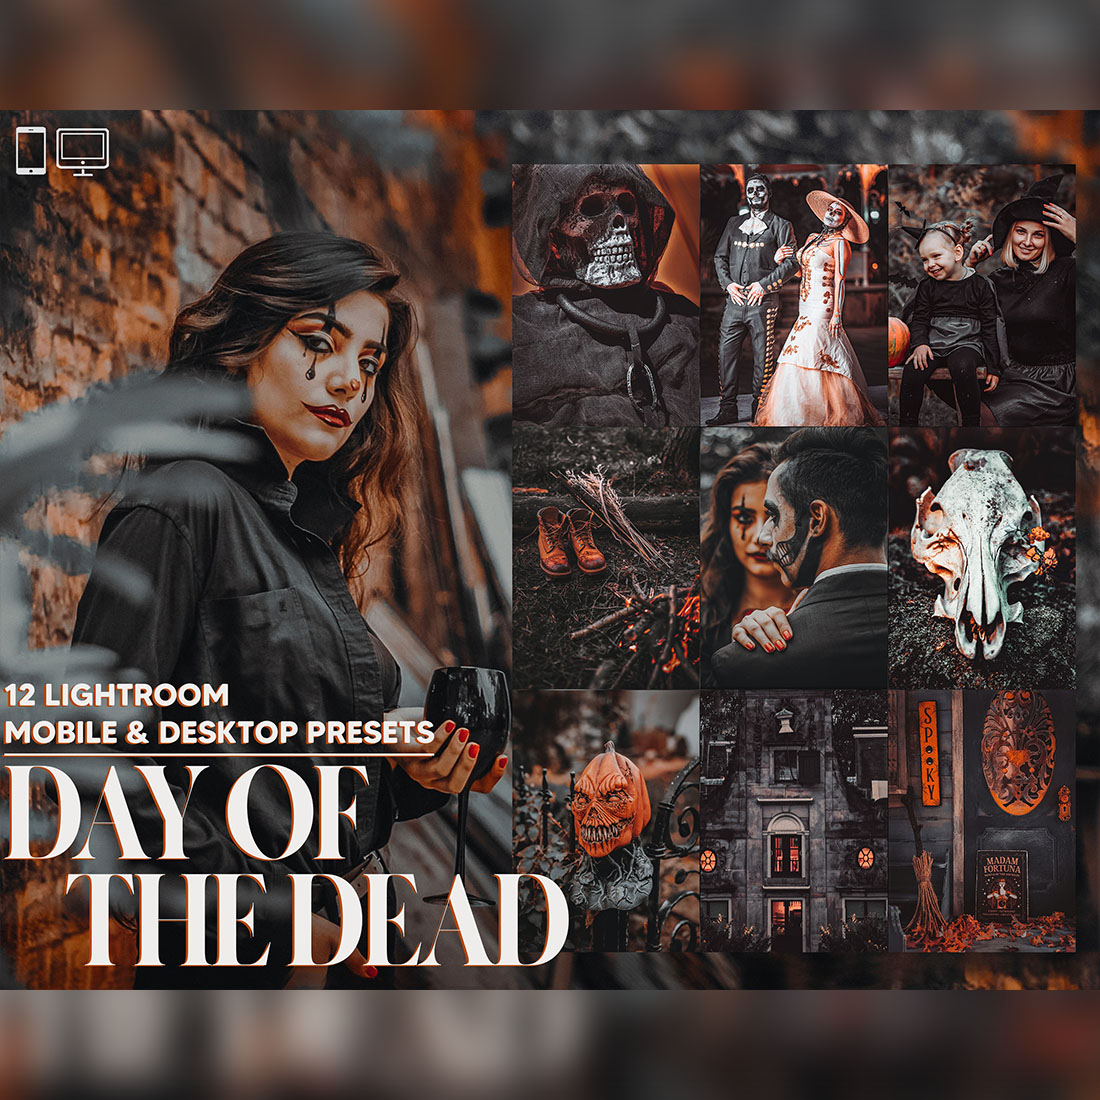 12 Day of the Dead Lightroom Presets, Halloween Mobile Preset, Black & Orange Desktop, Instagram Portrait Theme Lifestyle LR Filter DNG cover image.